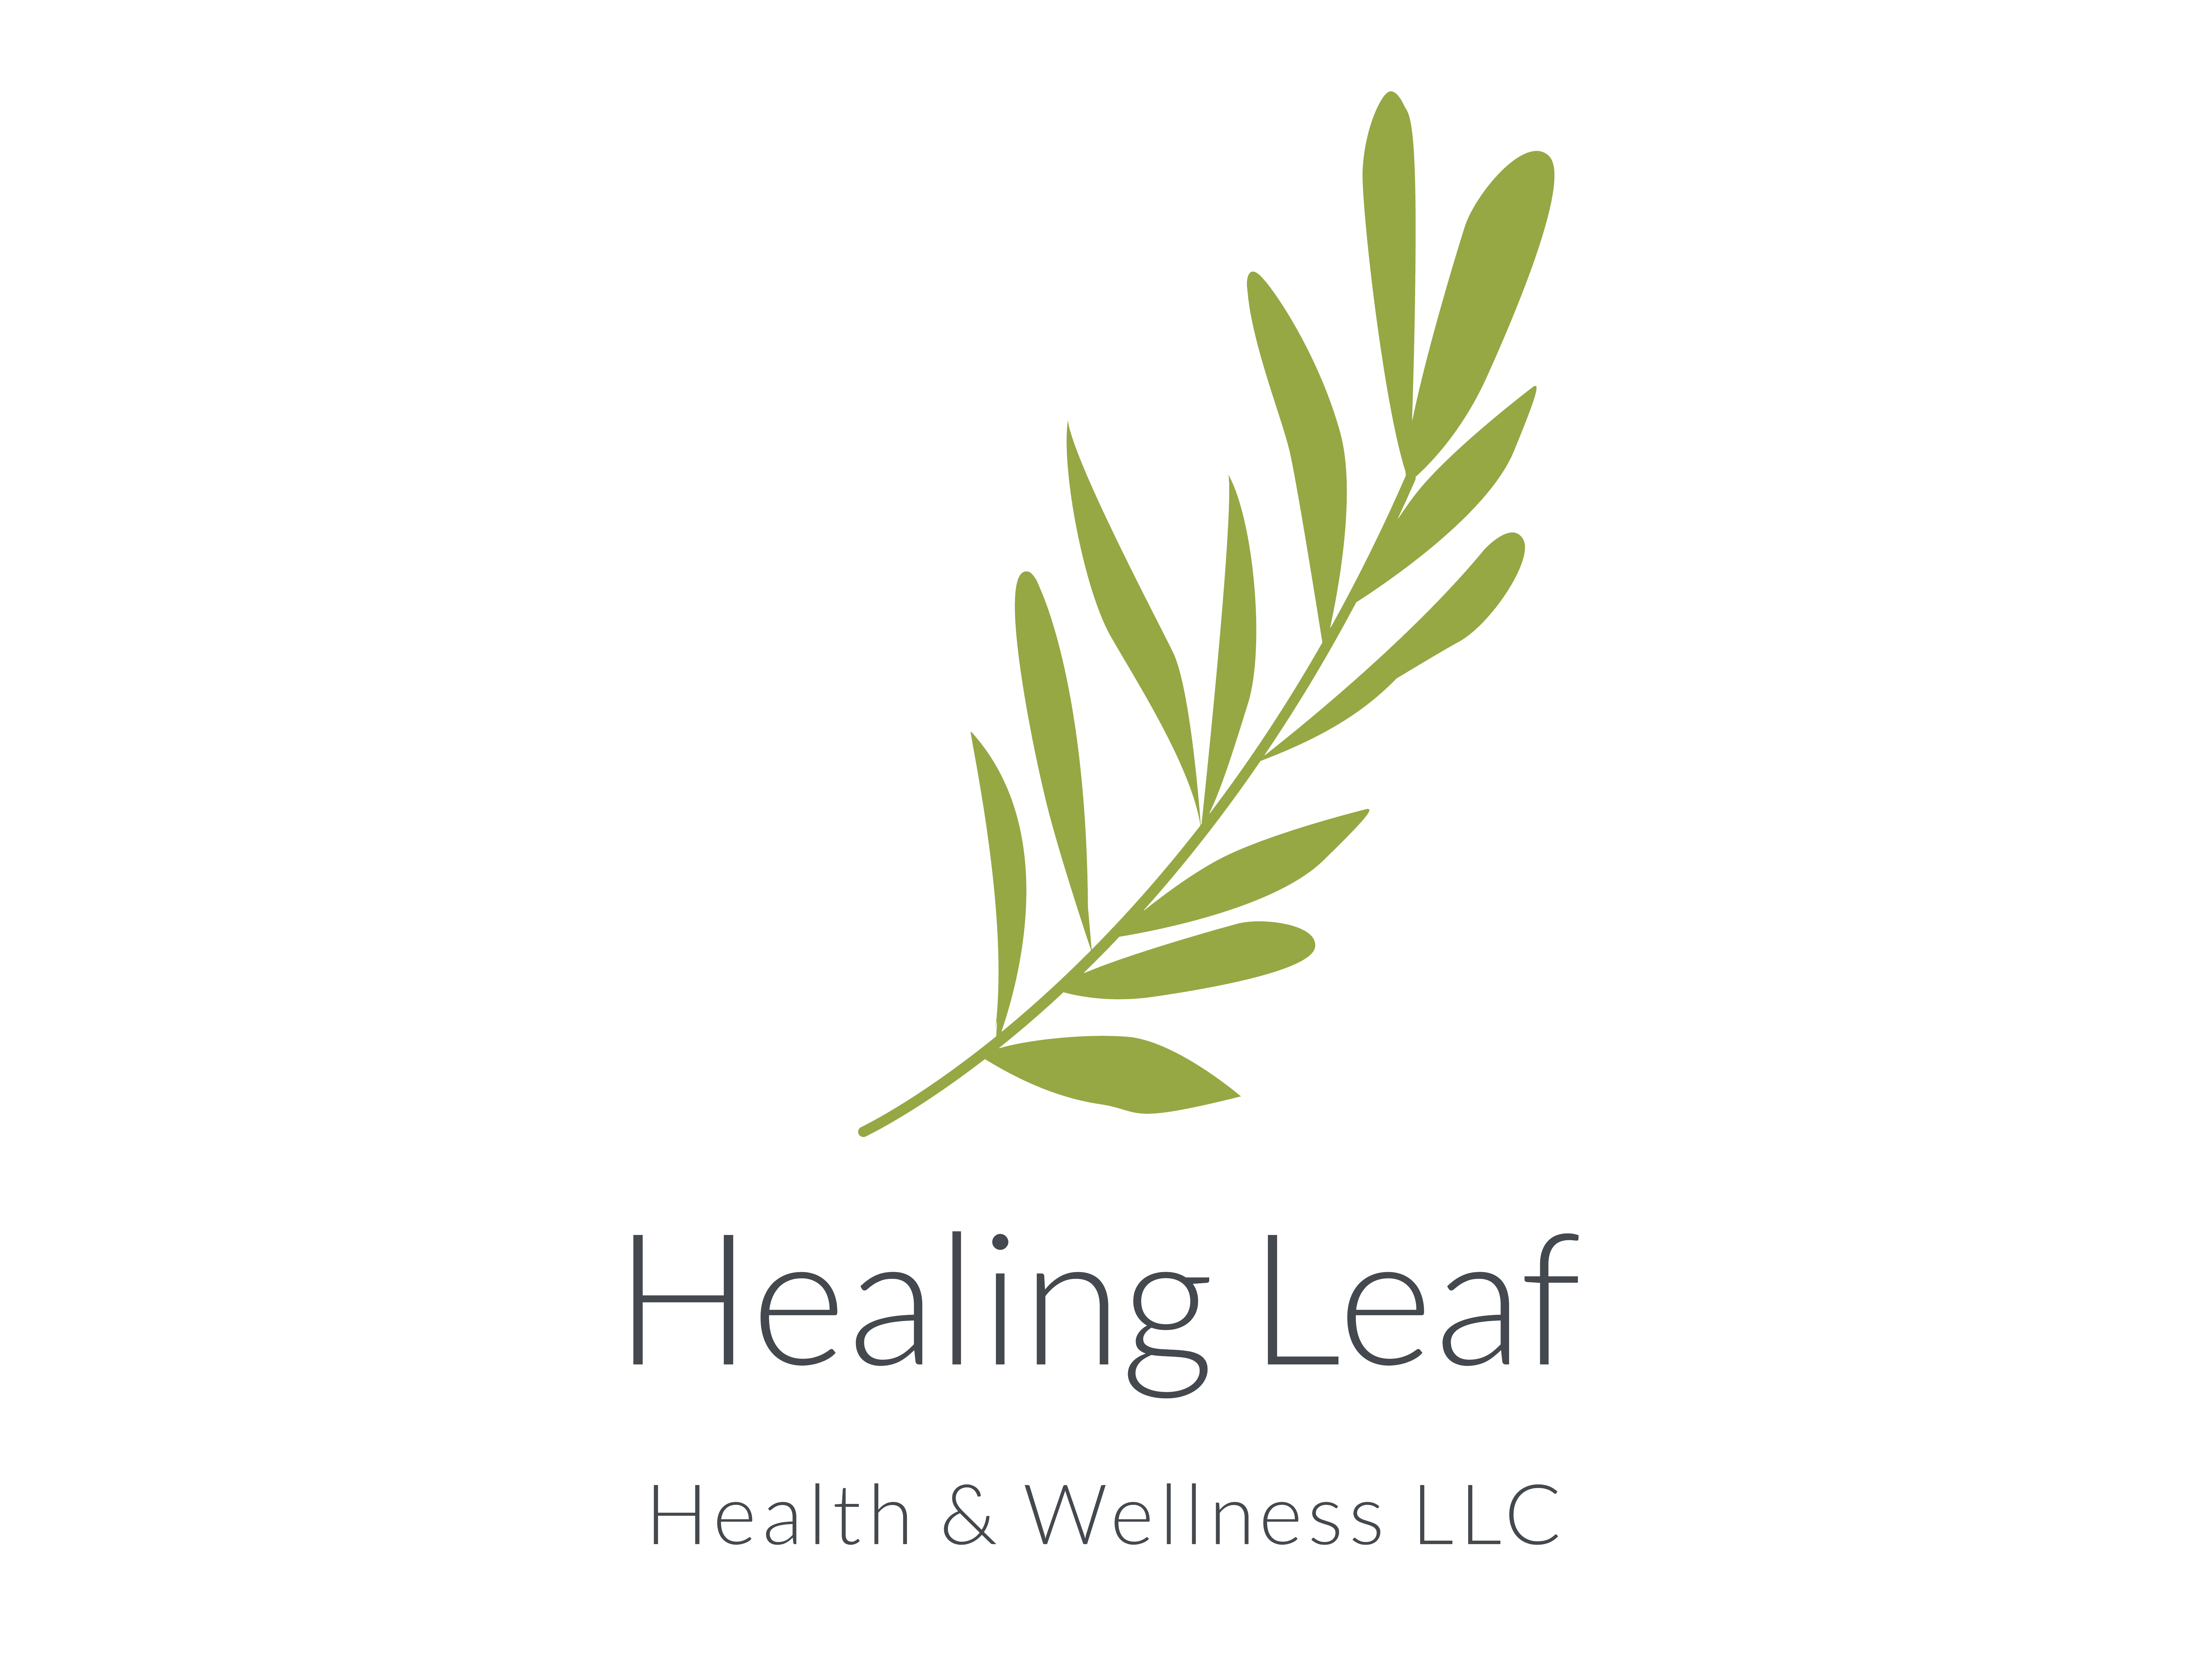 cropped-healingleaf.png | Healing Leaf Health & Wellness